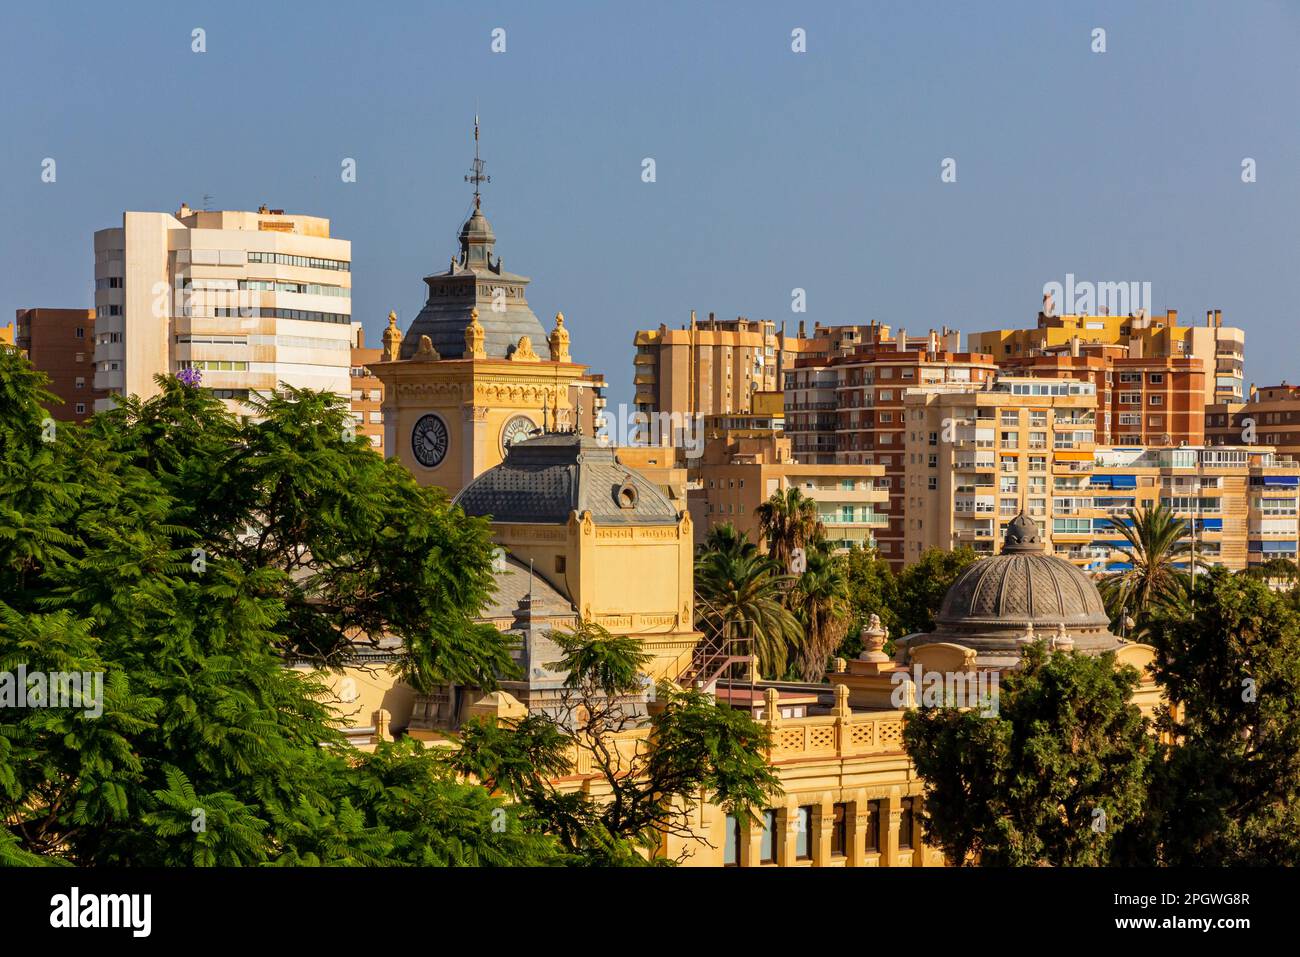 Vue sur les maisons, les appartements et les bâtiments de Malaga une grande ville dans la province de Malaga, Andalousie, sud de l'Espagne. Banque D'Images